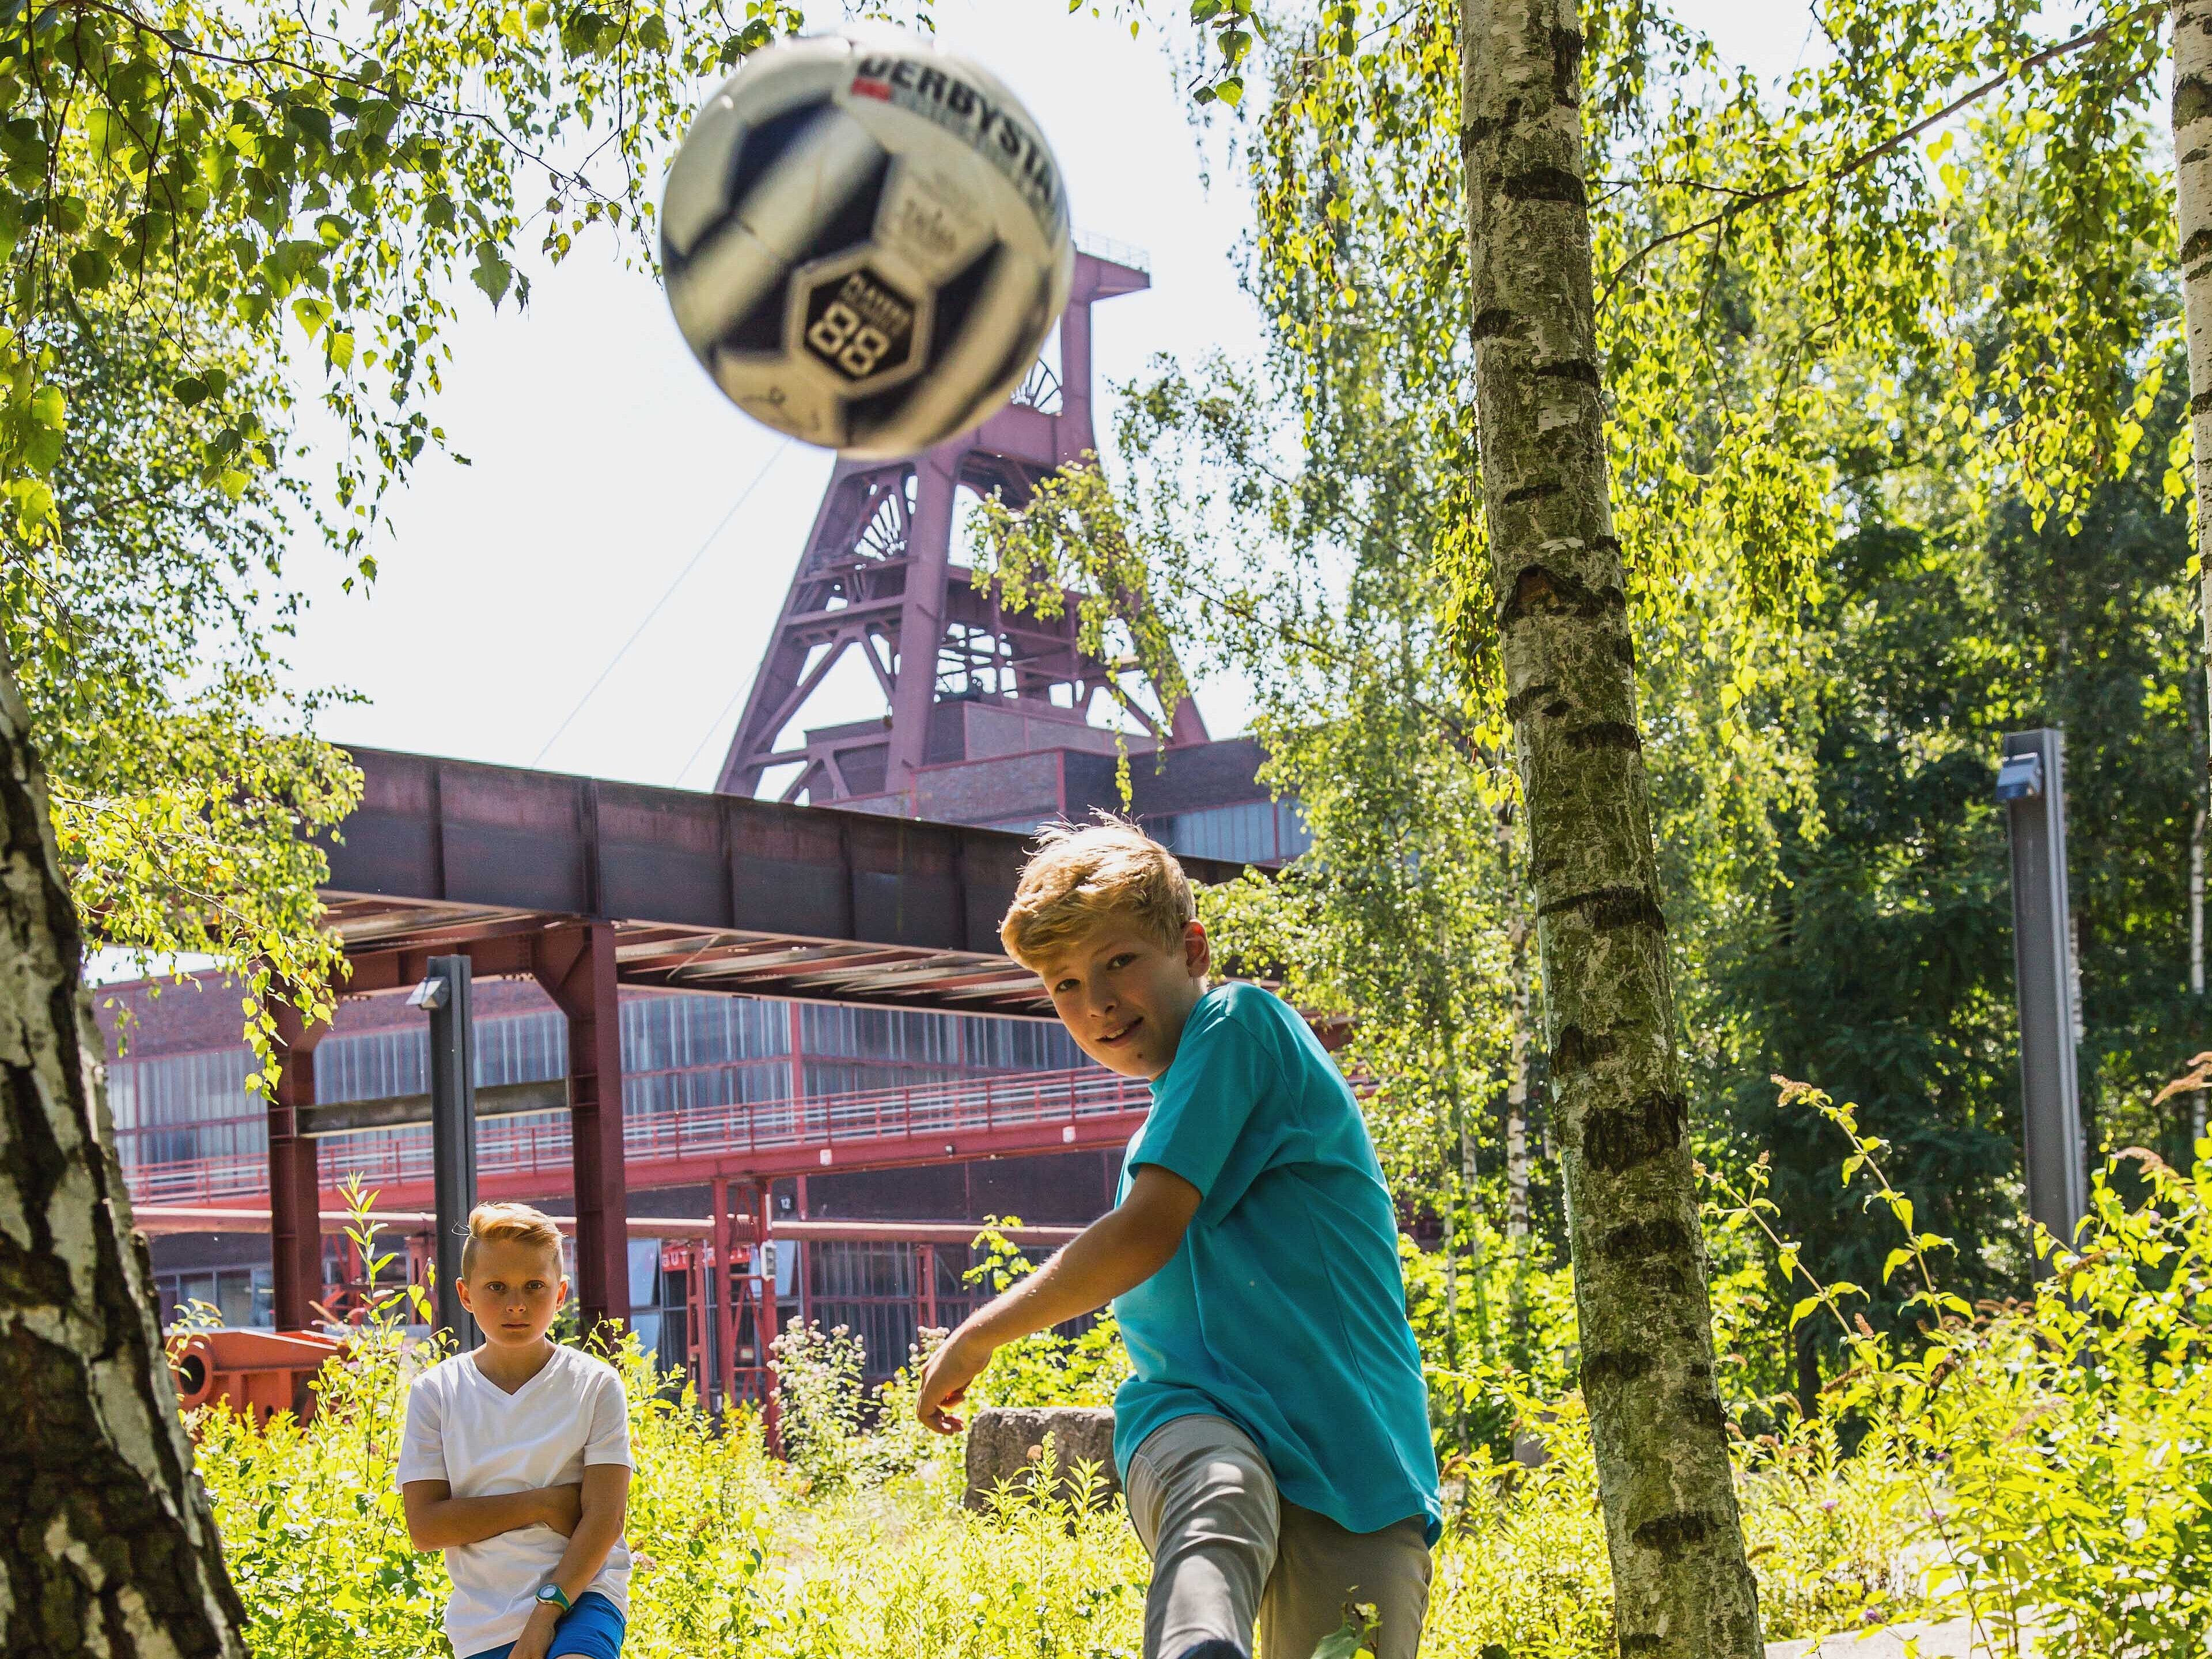 Bild: Zwei fußballspielende Jungs im Hintergrund der Förderturm der Zeche Zollverein